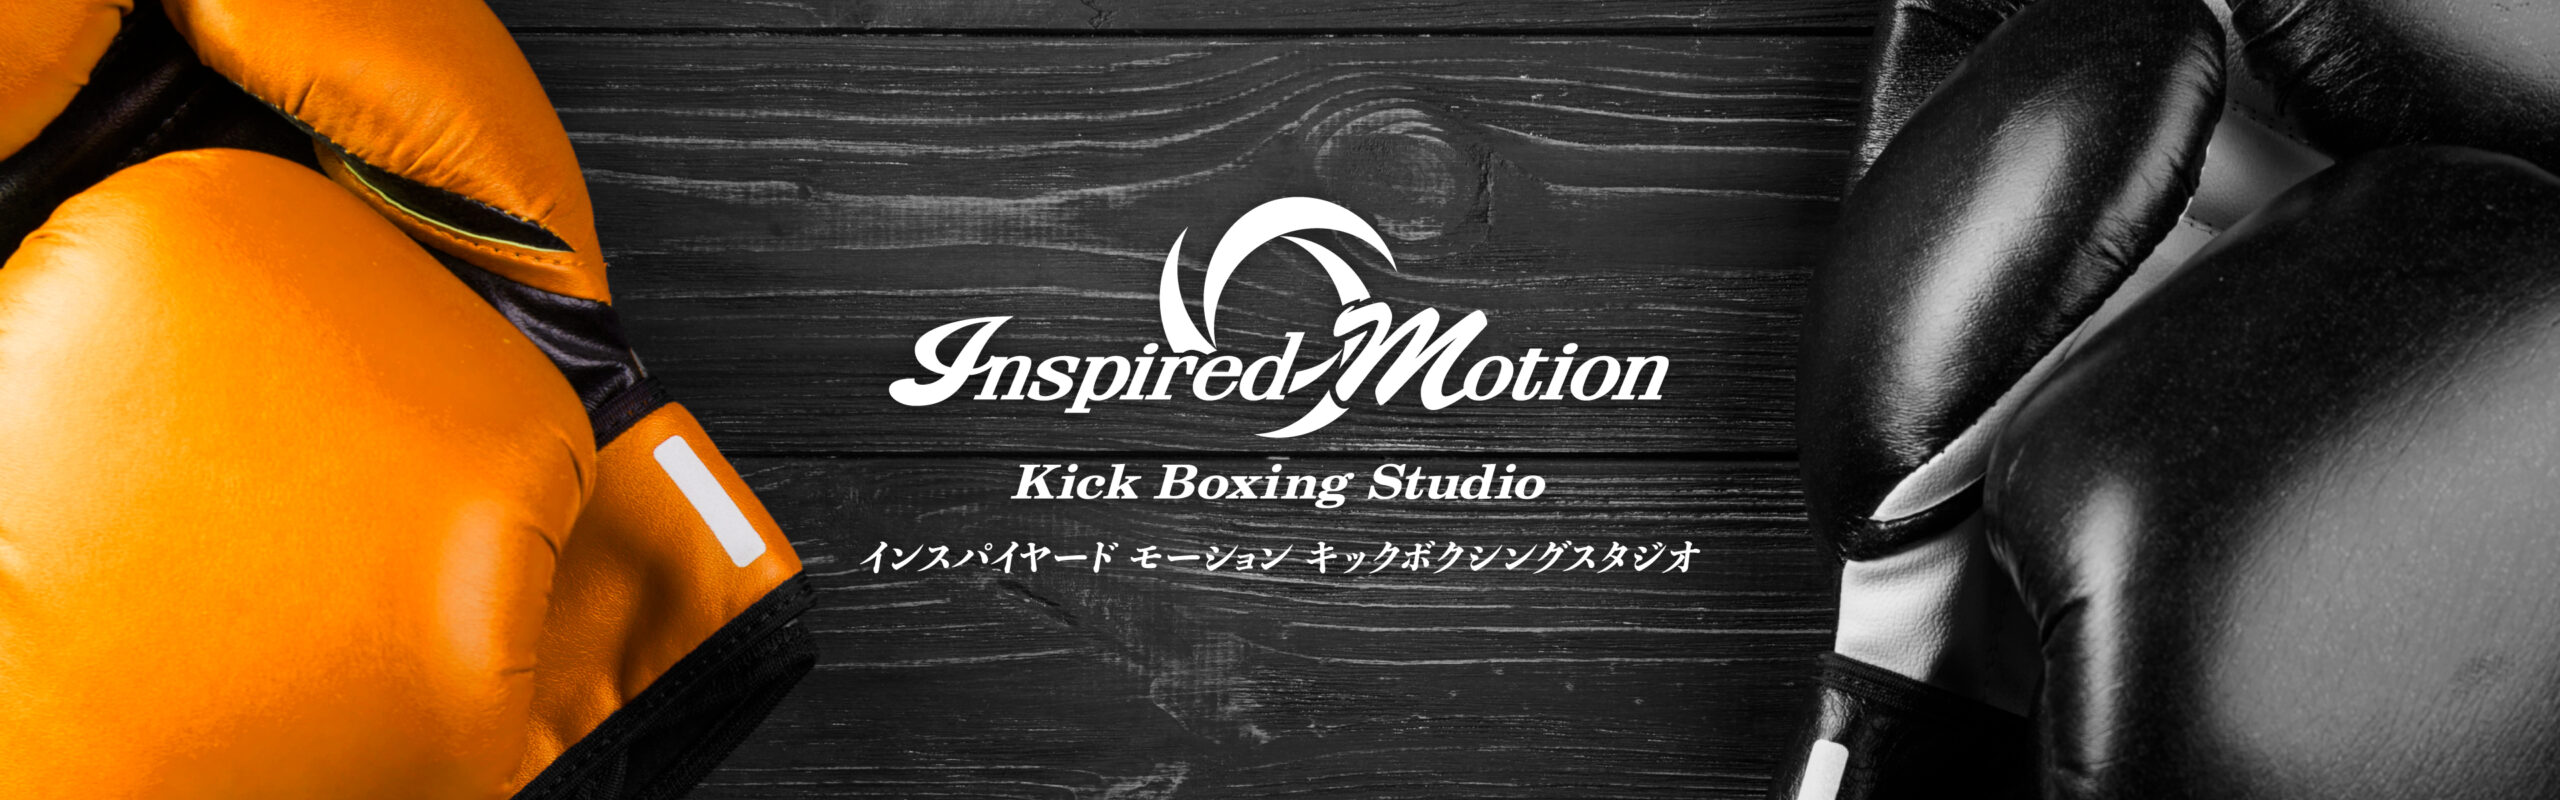 インスパイヤードモーションキックボクシングスタジオのロゴ画像